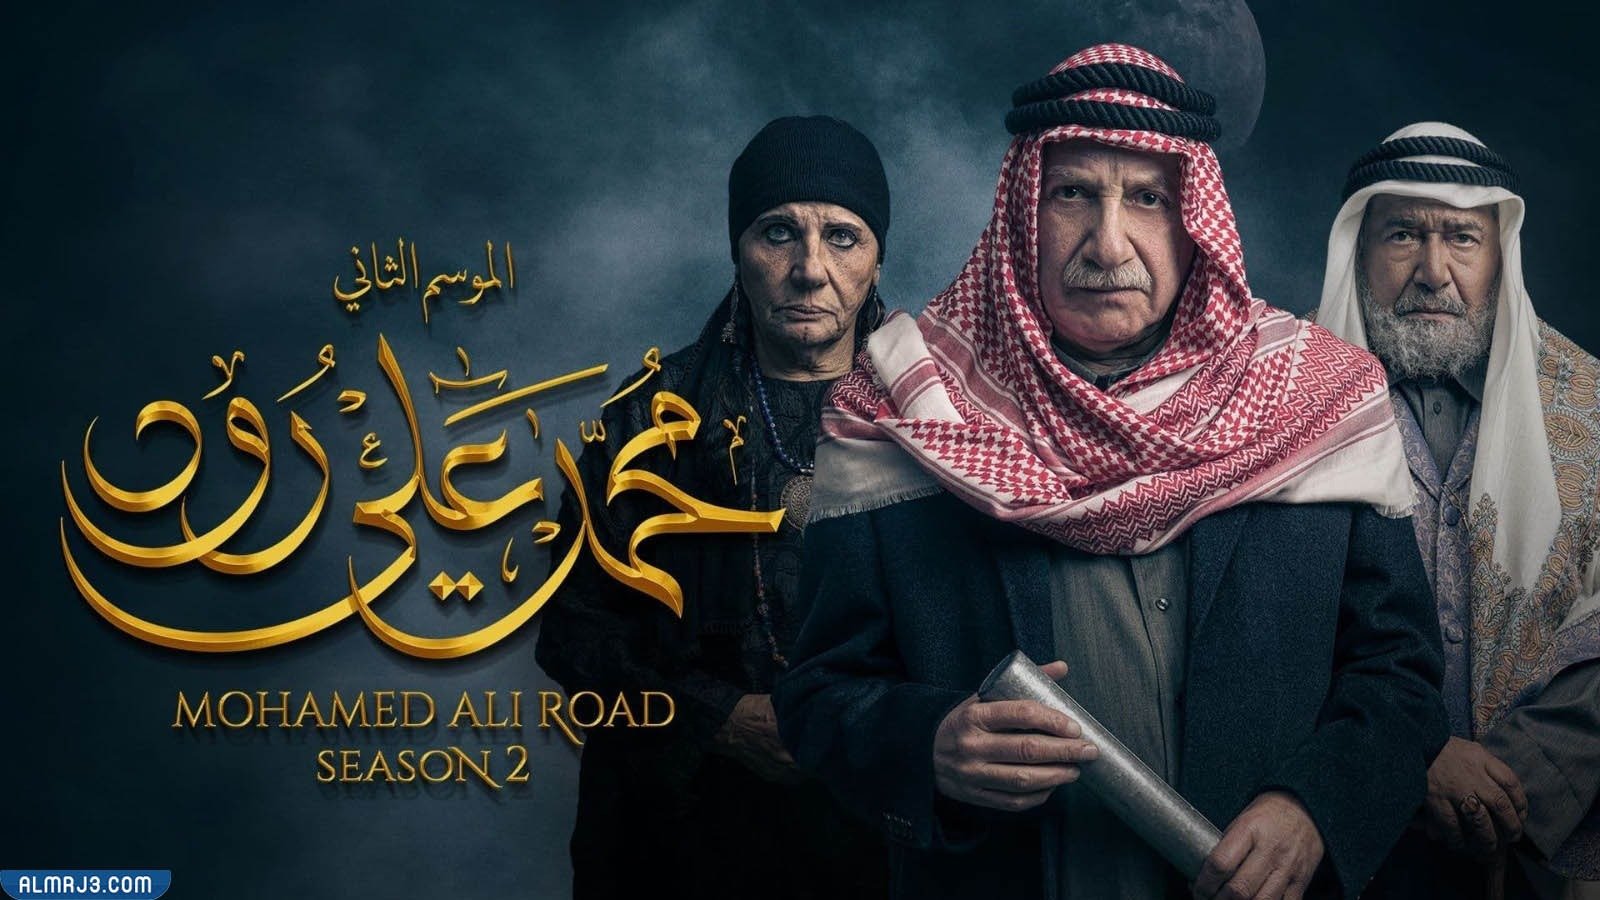 توقيت عرض مسلسل محمد علي رود الجزء الثاني رمضان 2022 – محتوى